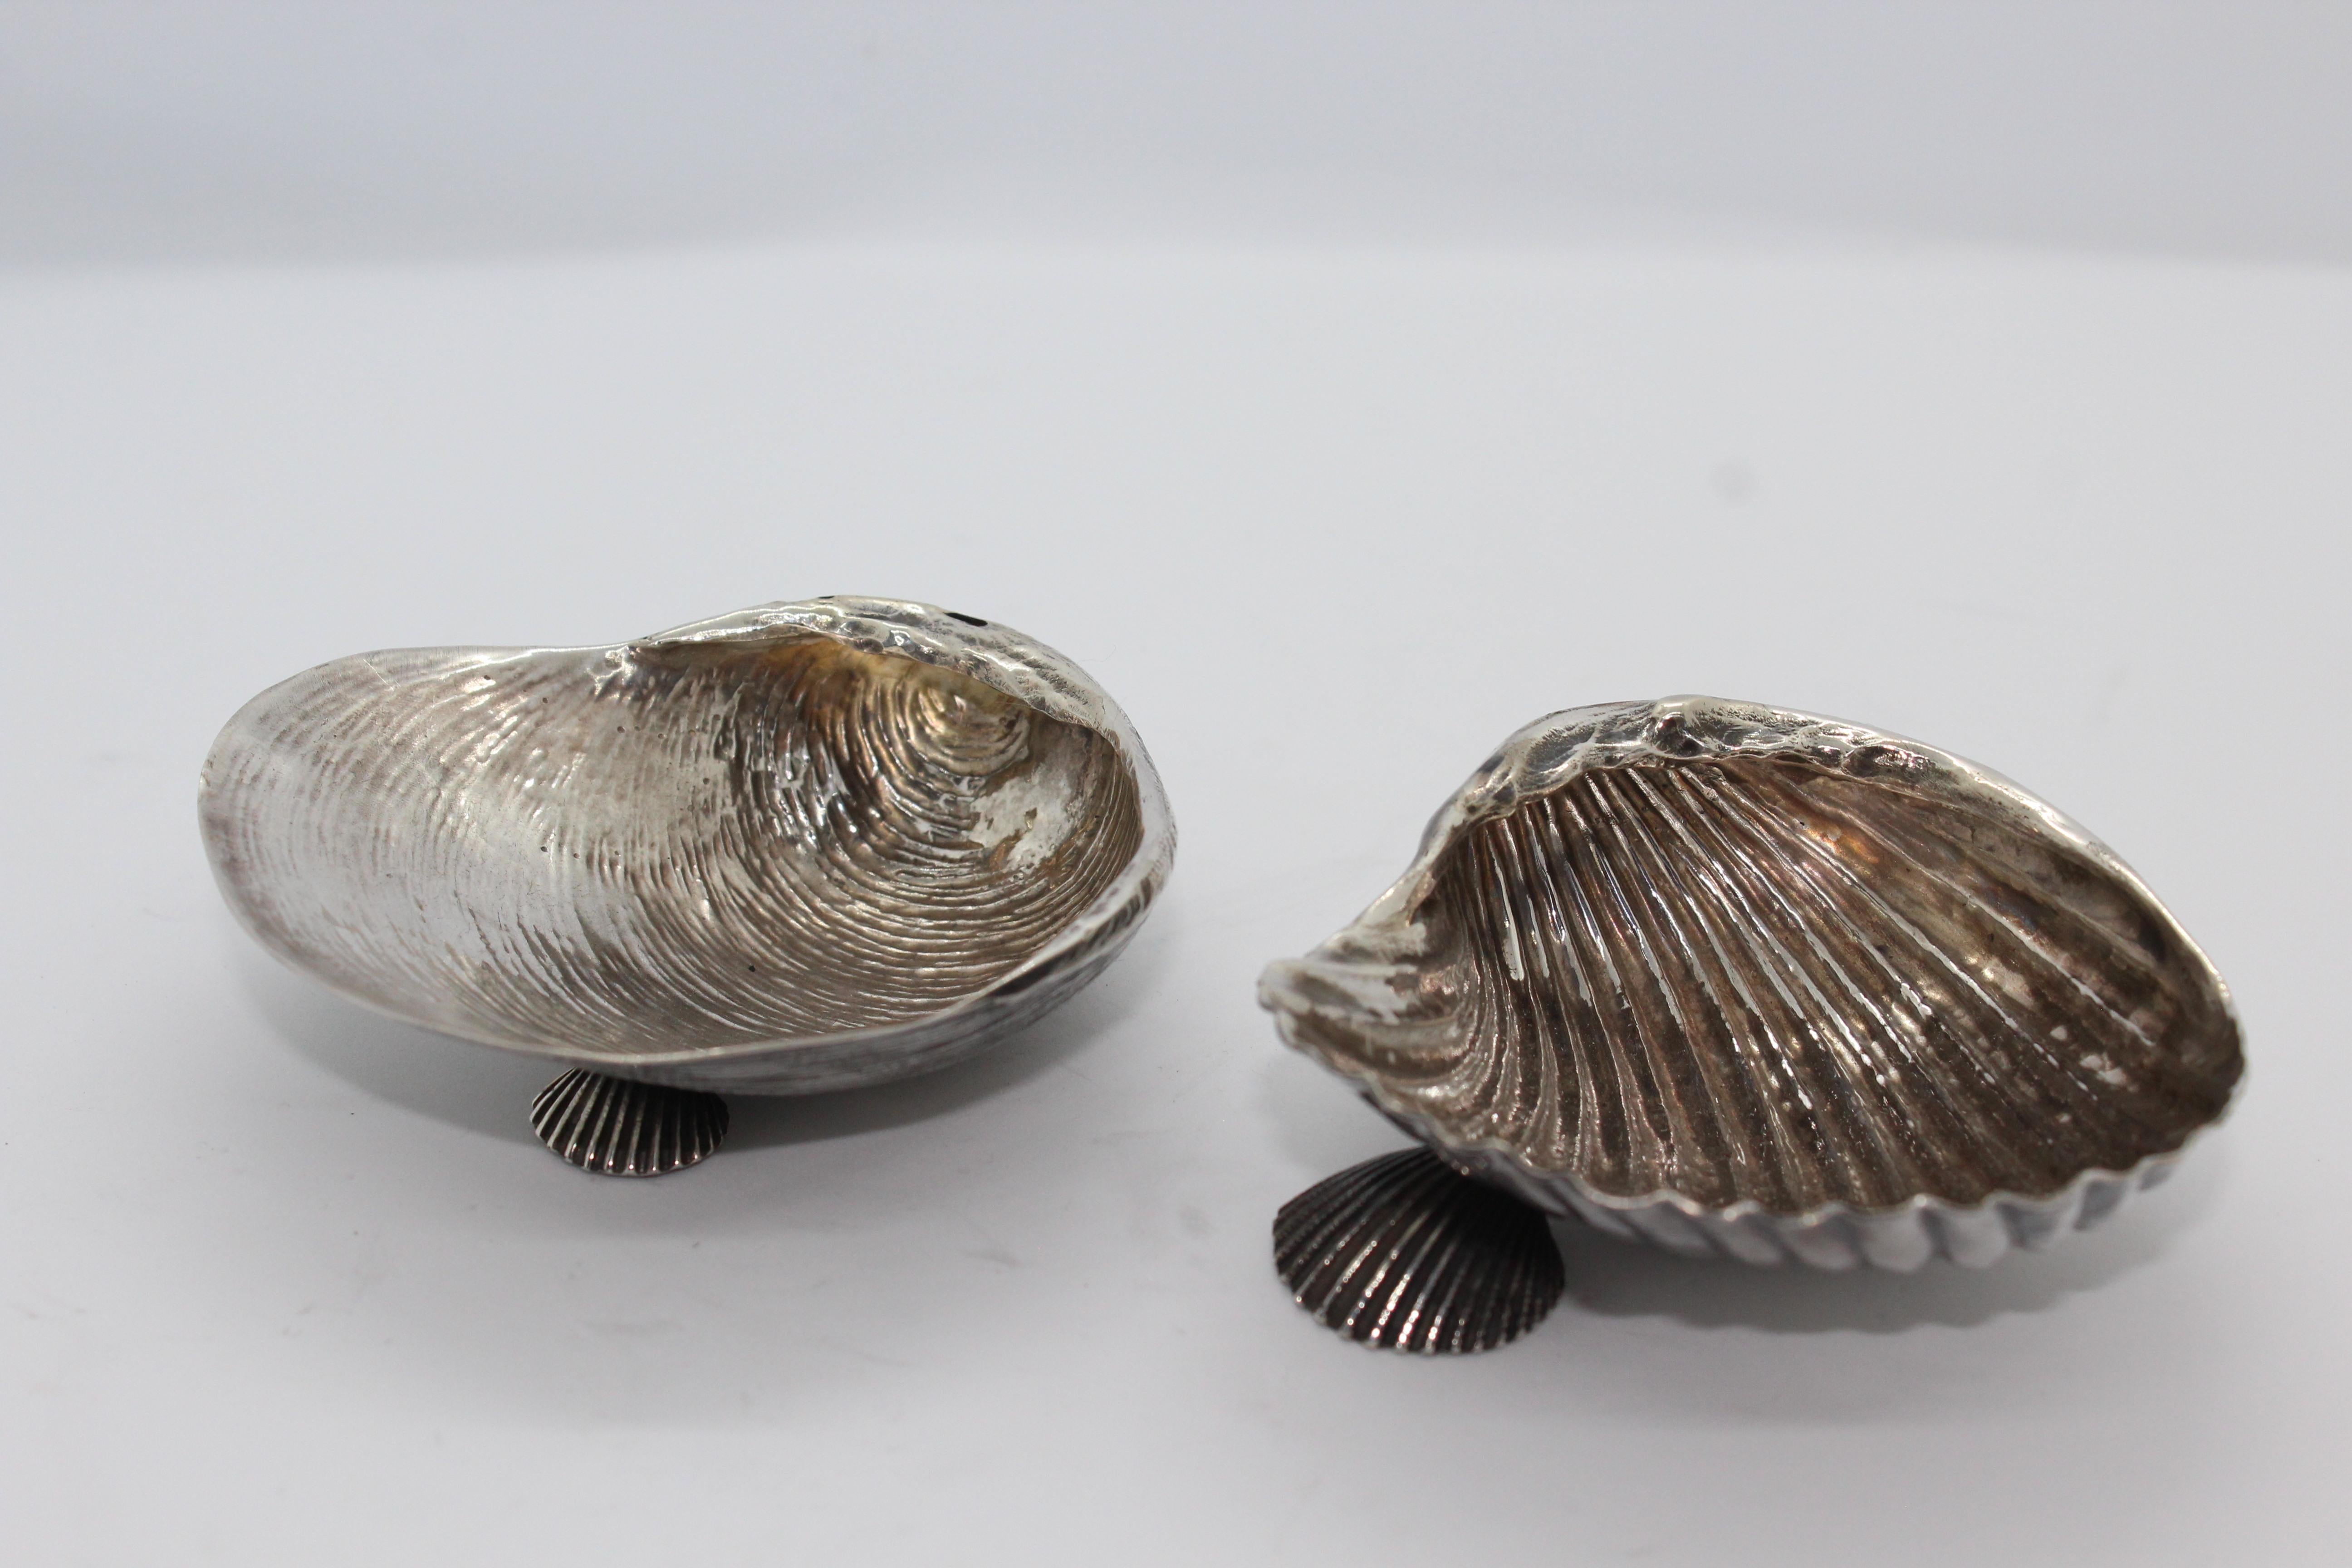 Silver SeaShell, vollständig in Florenz, Italien, hergestellt.
Sie können einzeln oder als Paar gekauft werden.
Giuliano Foglia ist der Künstler, der dieses reine Silberstück ziseliert hat.

